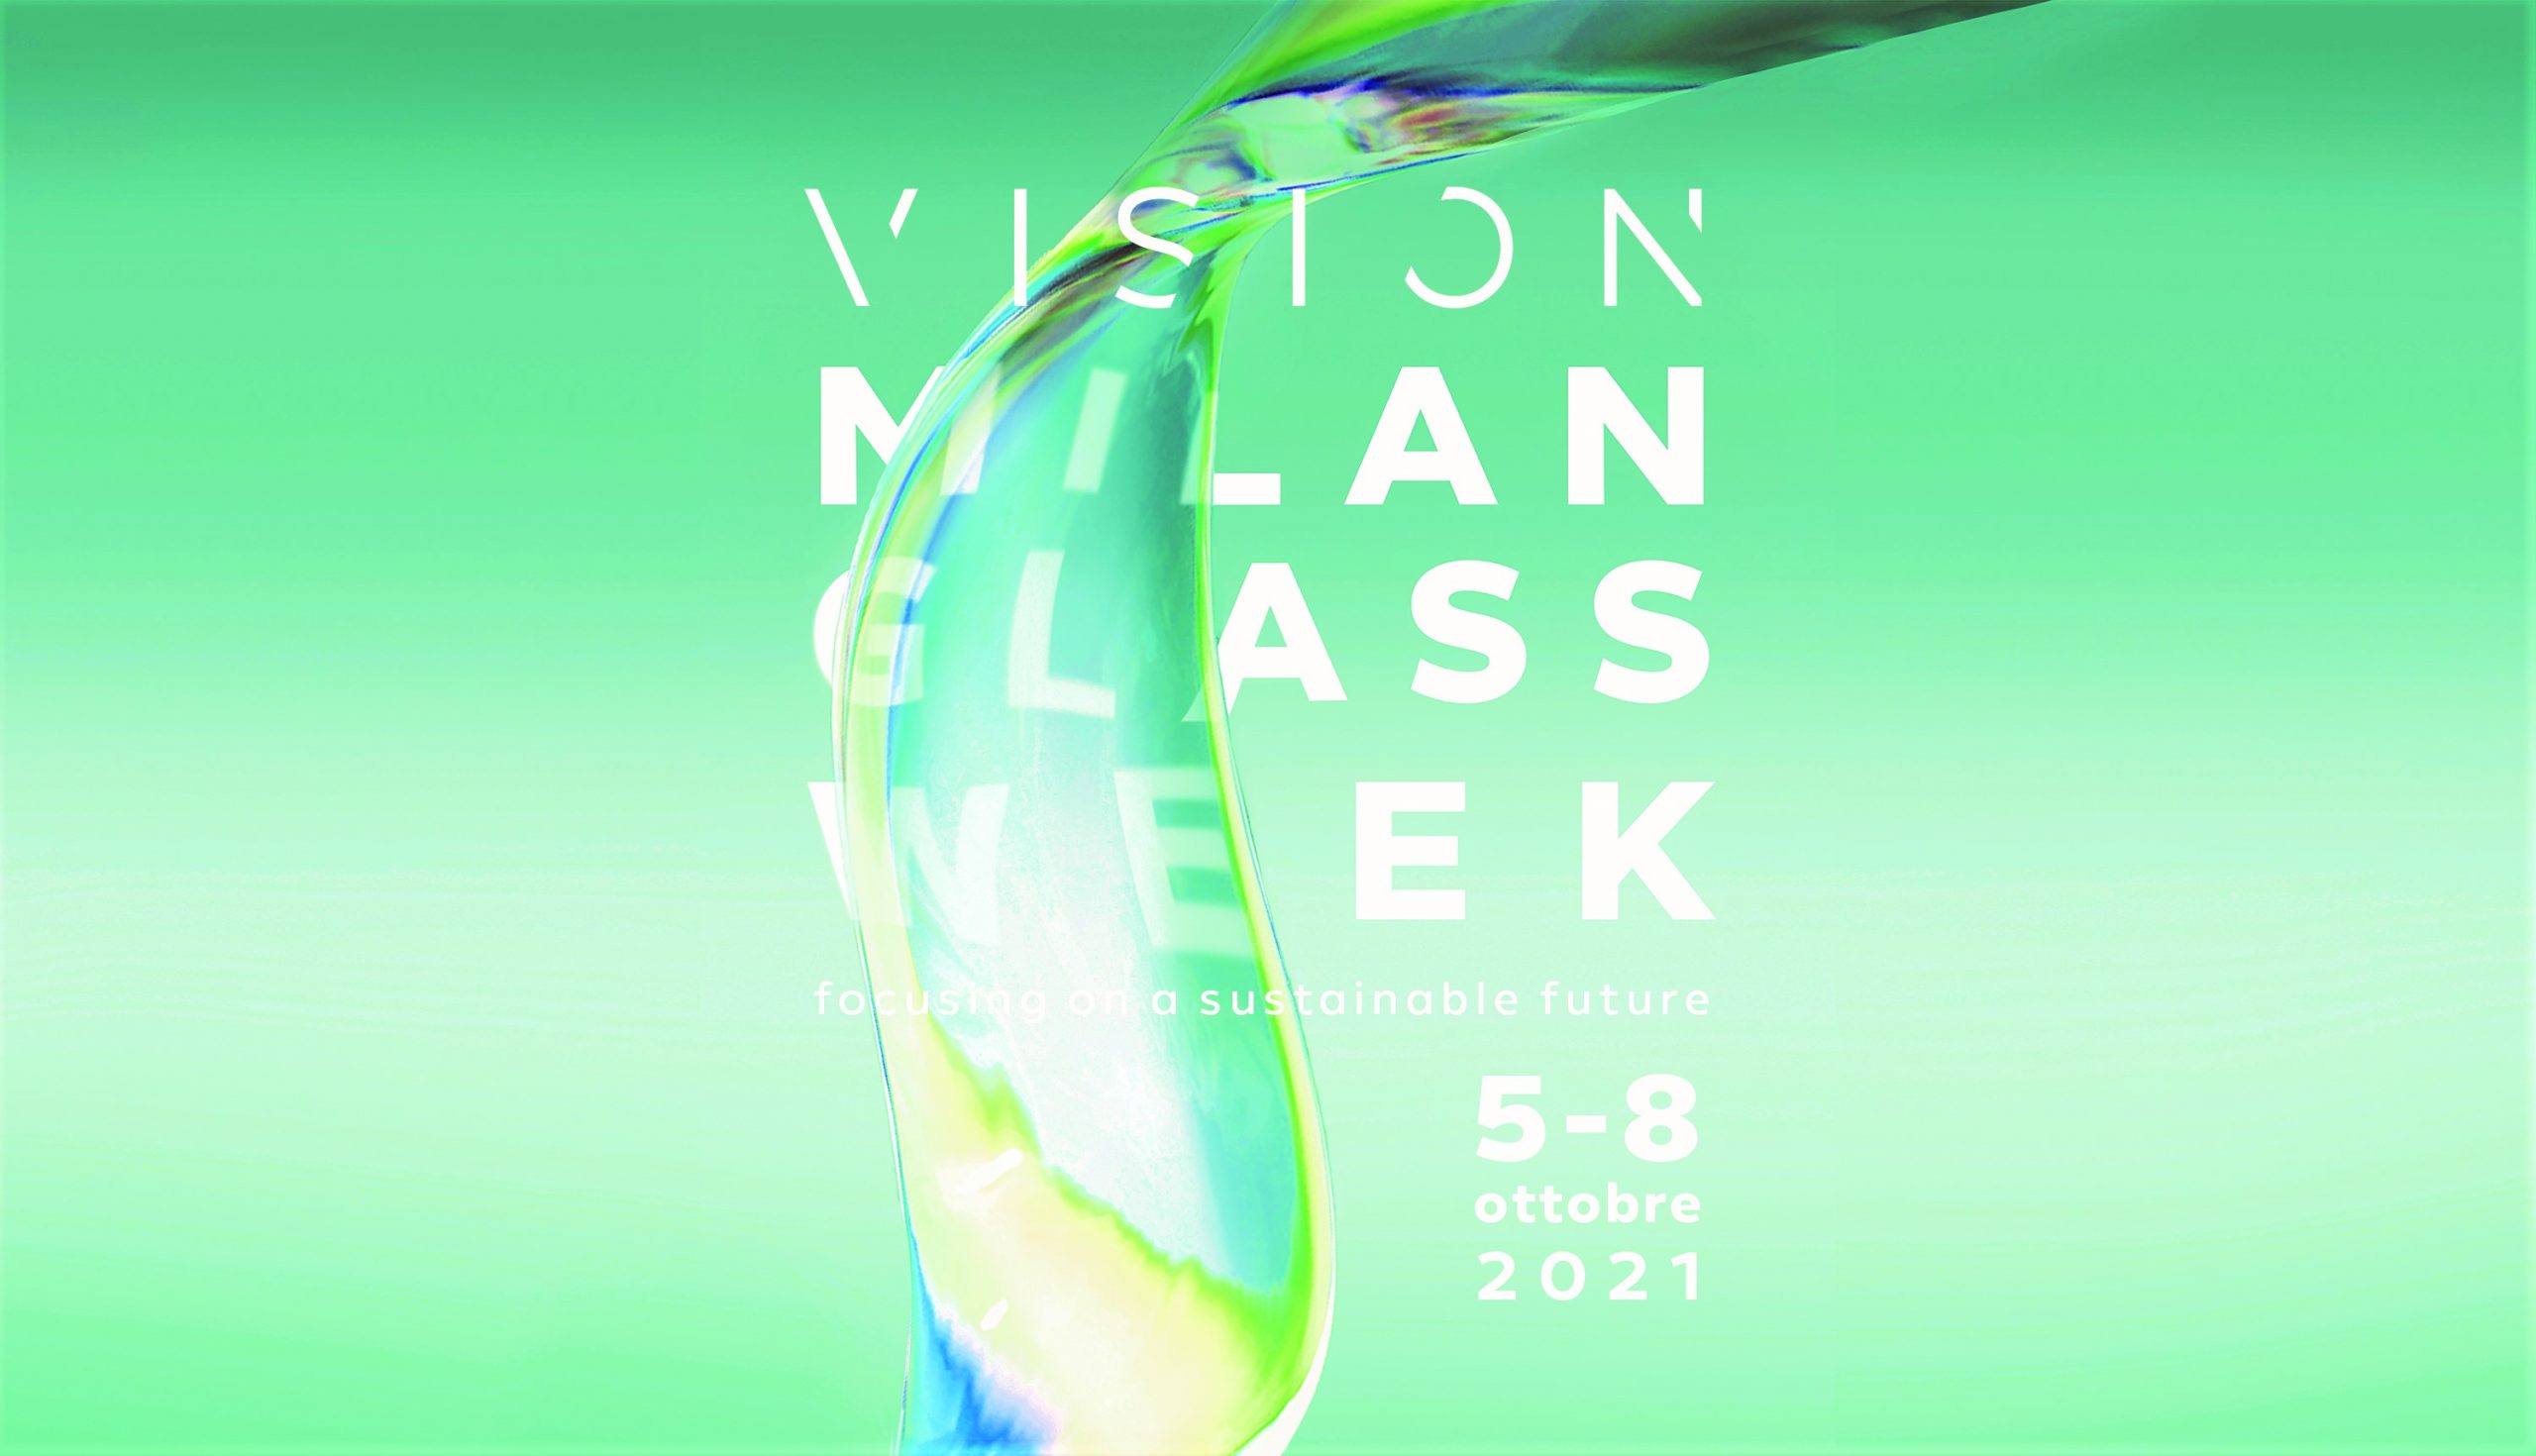 VISION Milan Glass Week, dal 5 all’8 ottobre la prima edizione